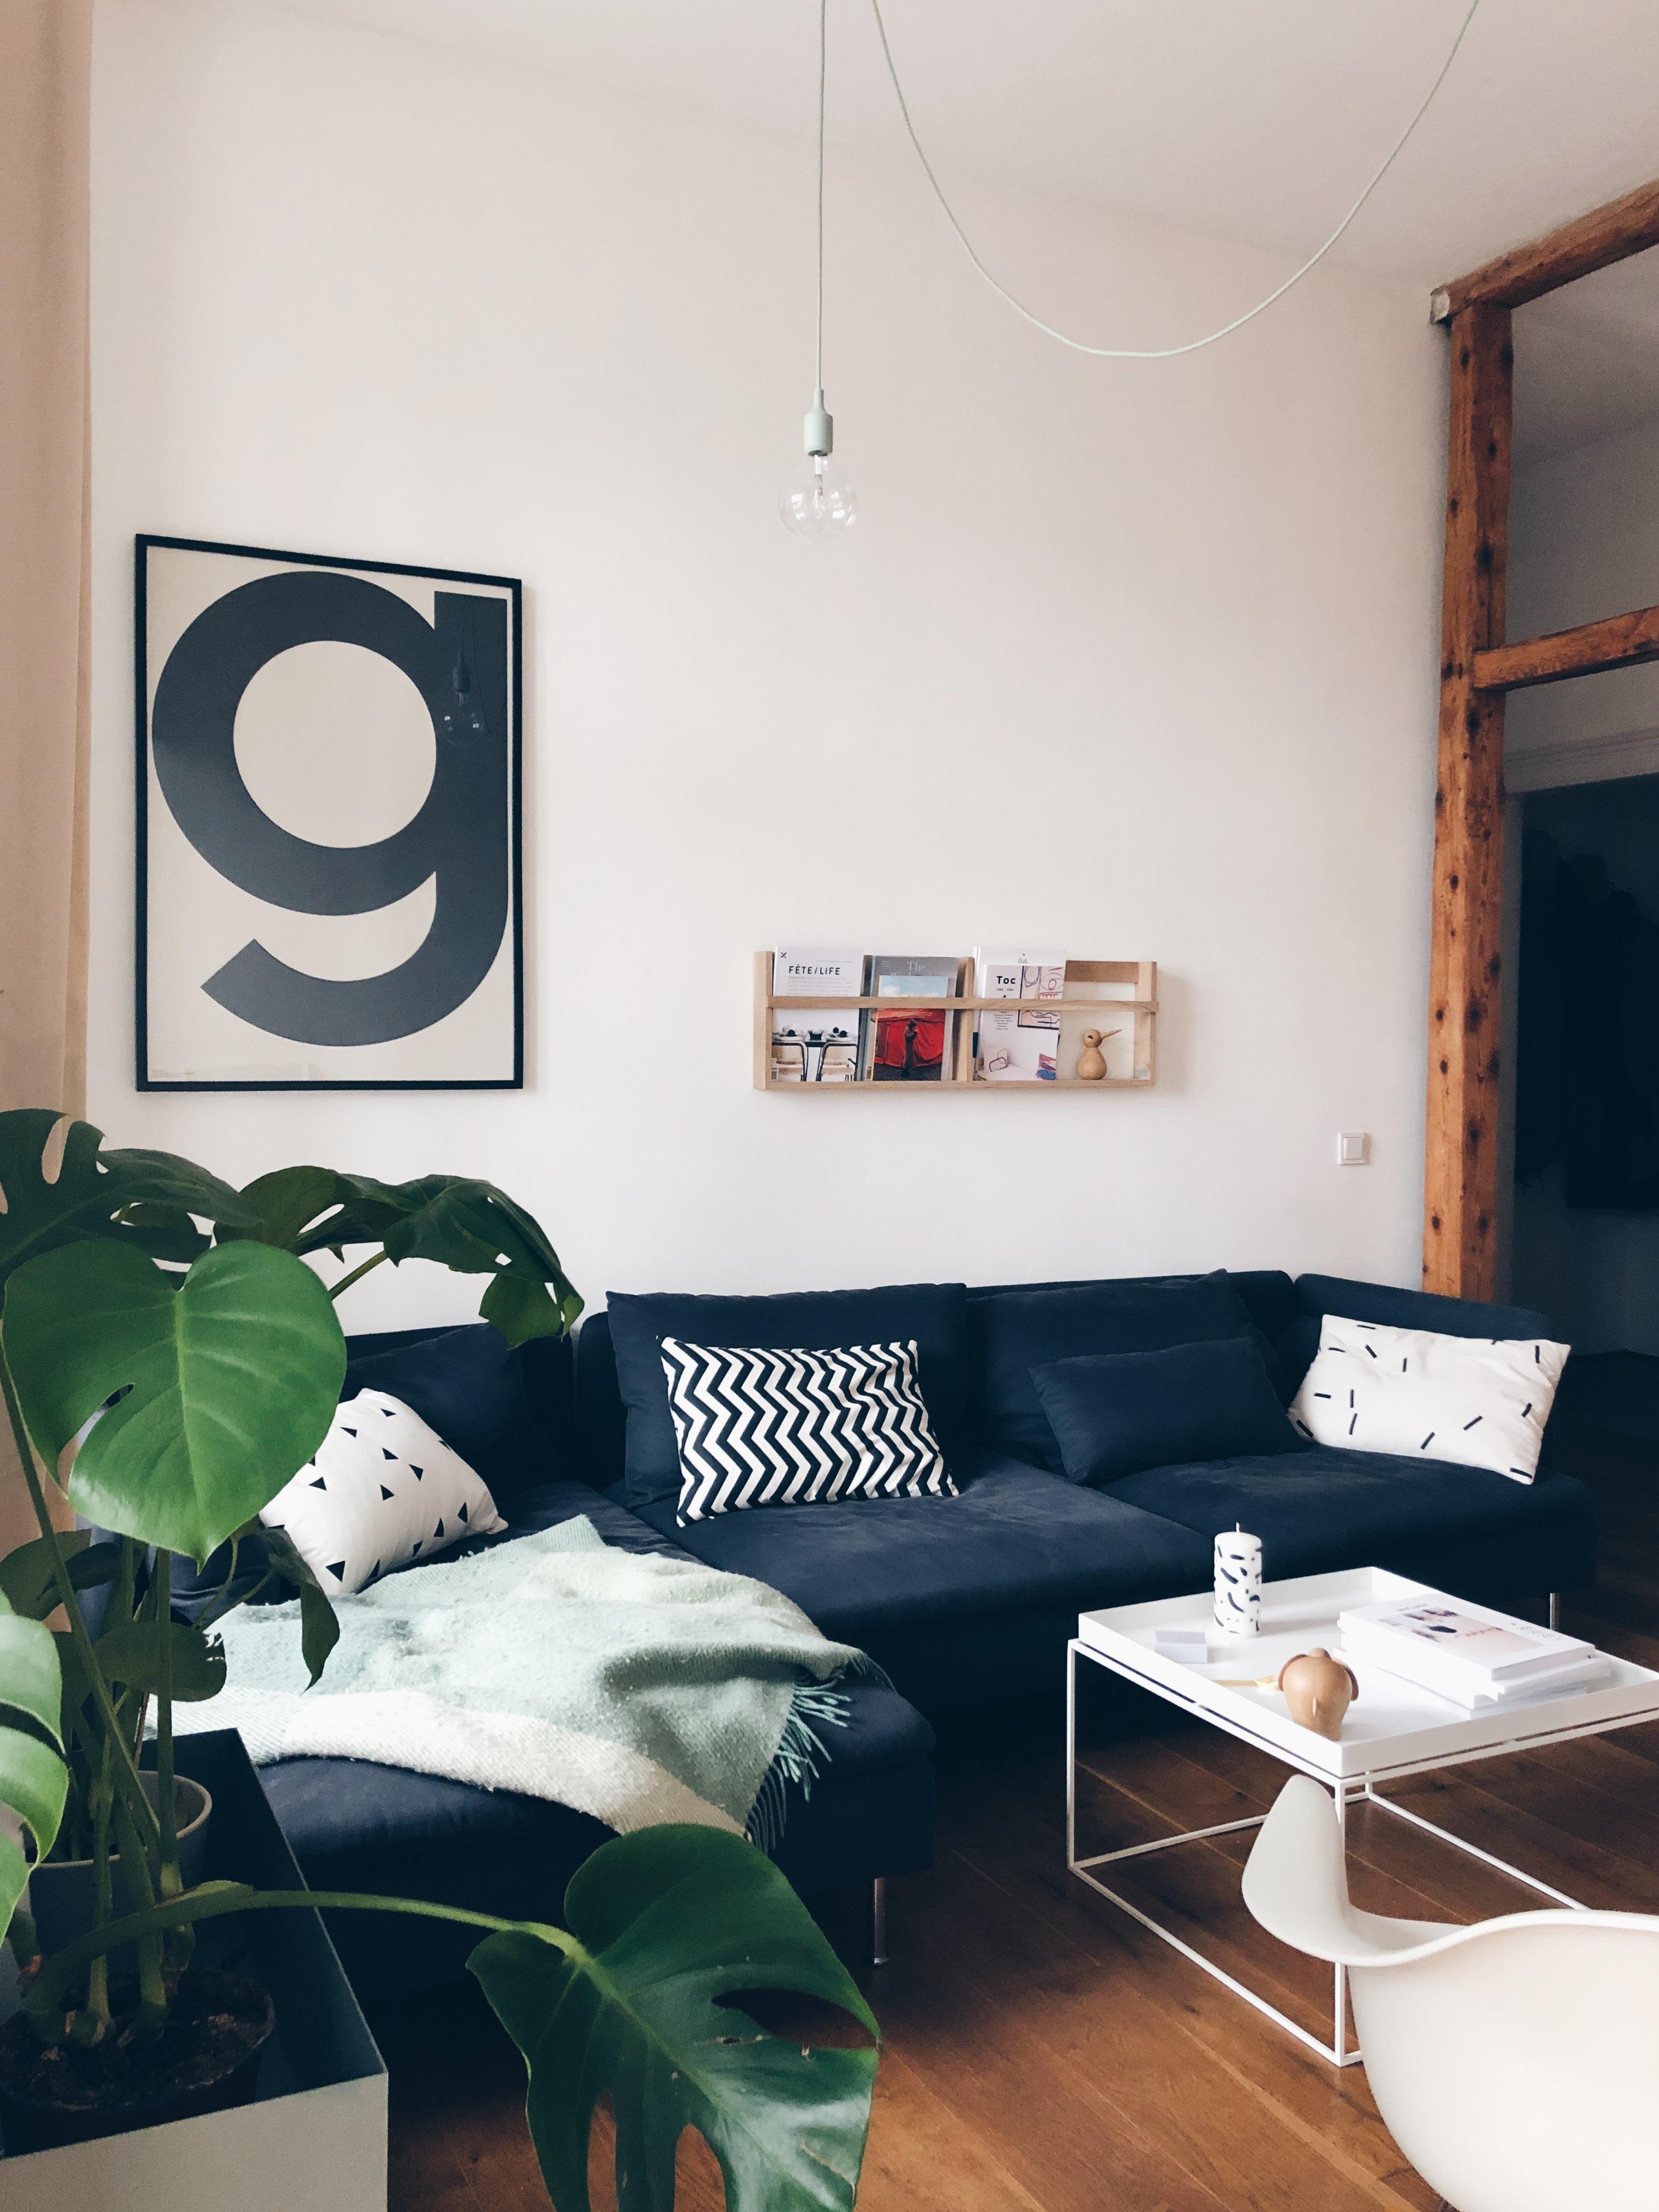 #livingroom #couchstyle #fermliving #haydesign #muuto #playtype #scandinaviandesign #plantbox #monstera